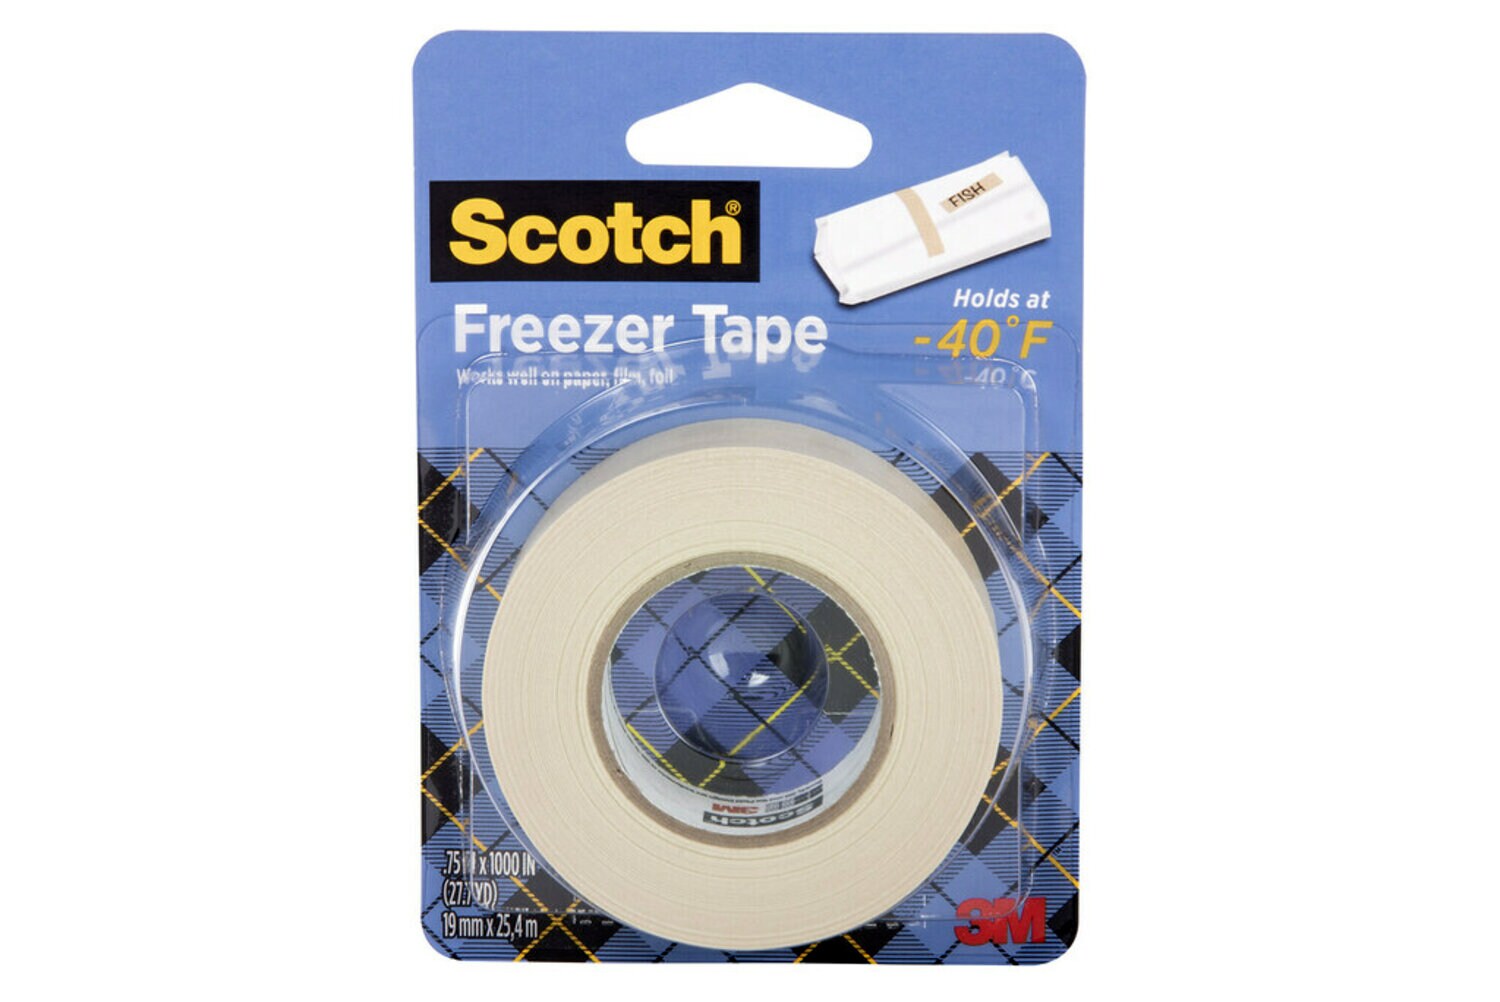 7100085714 - Scotch Freezer Tape 178, 3/4 in x 1000 in (19 mm x 25,4 mm)